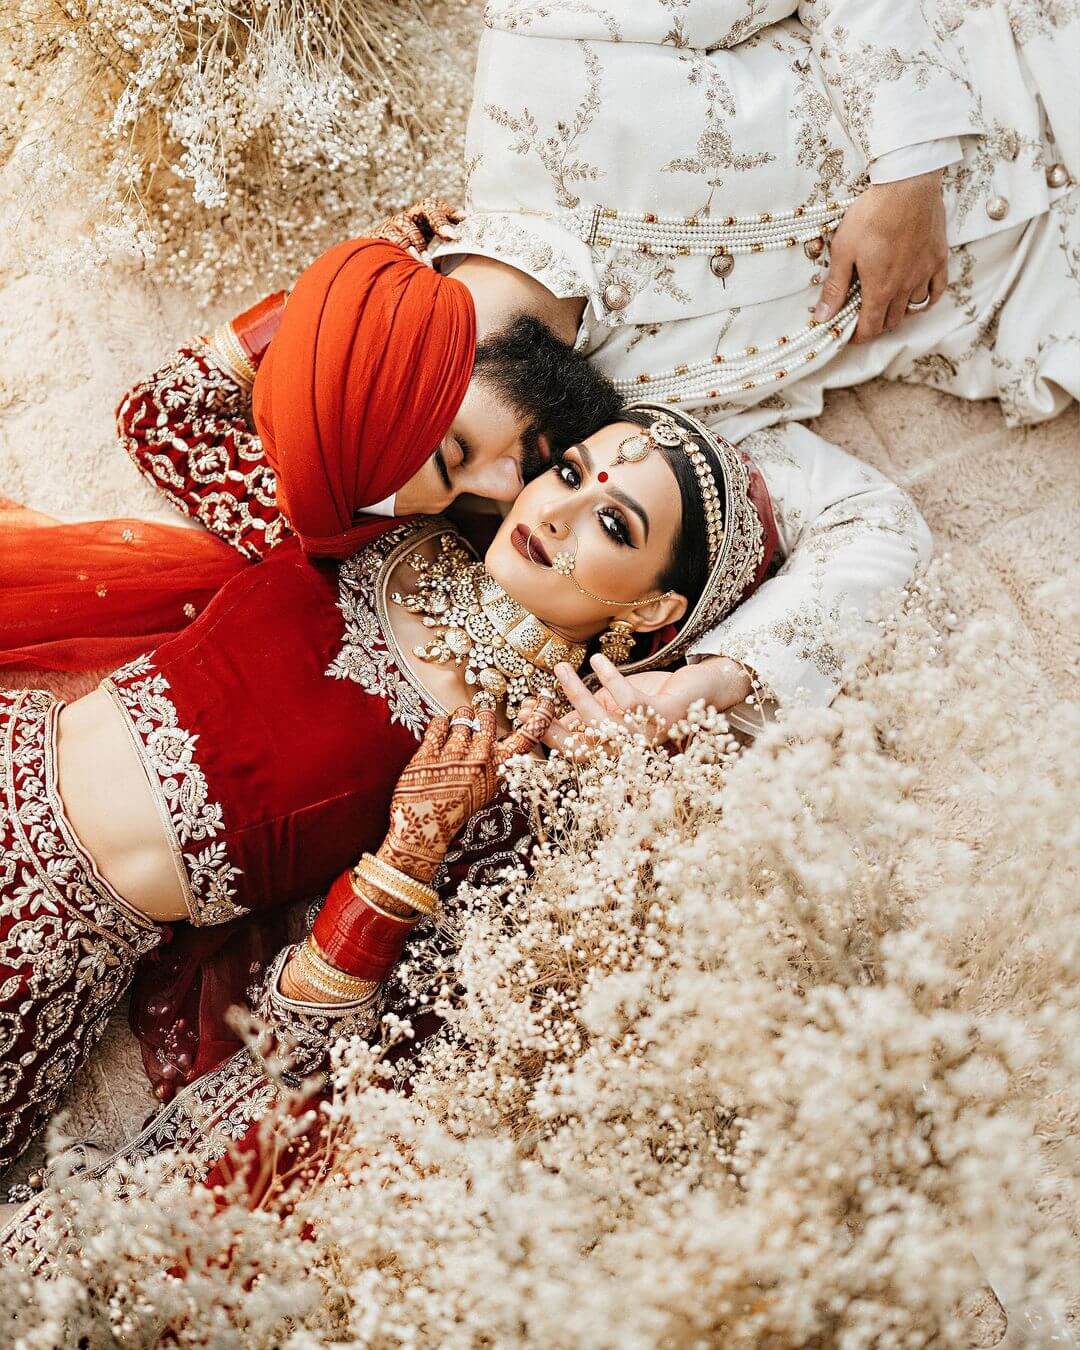 Indian Wedding Couple Poses And Photoshoot Ideas - K4 Fashion